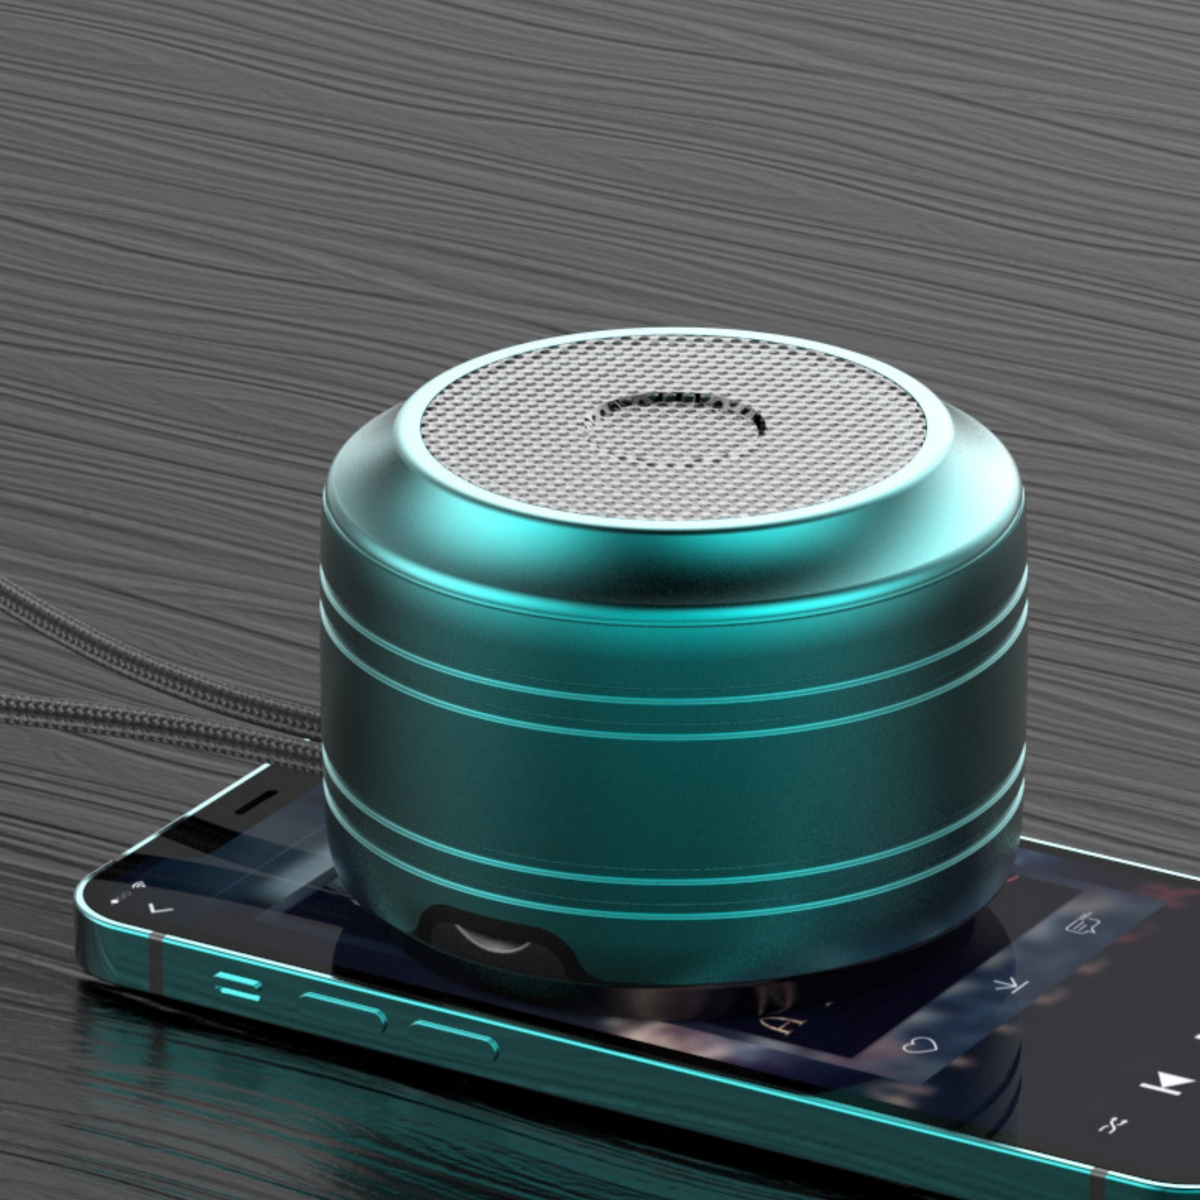 SHAOKE Bluetooth-Lautsprecher HD-Klangqualität kabellos Bluetooth Lautsprecher, 360°-Surround-Sound tragbar Grün